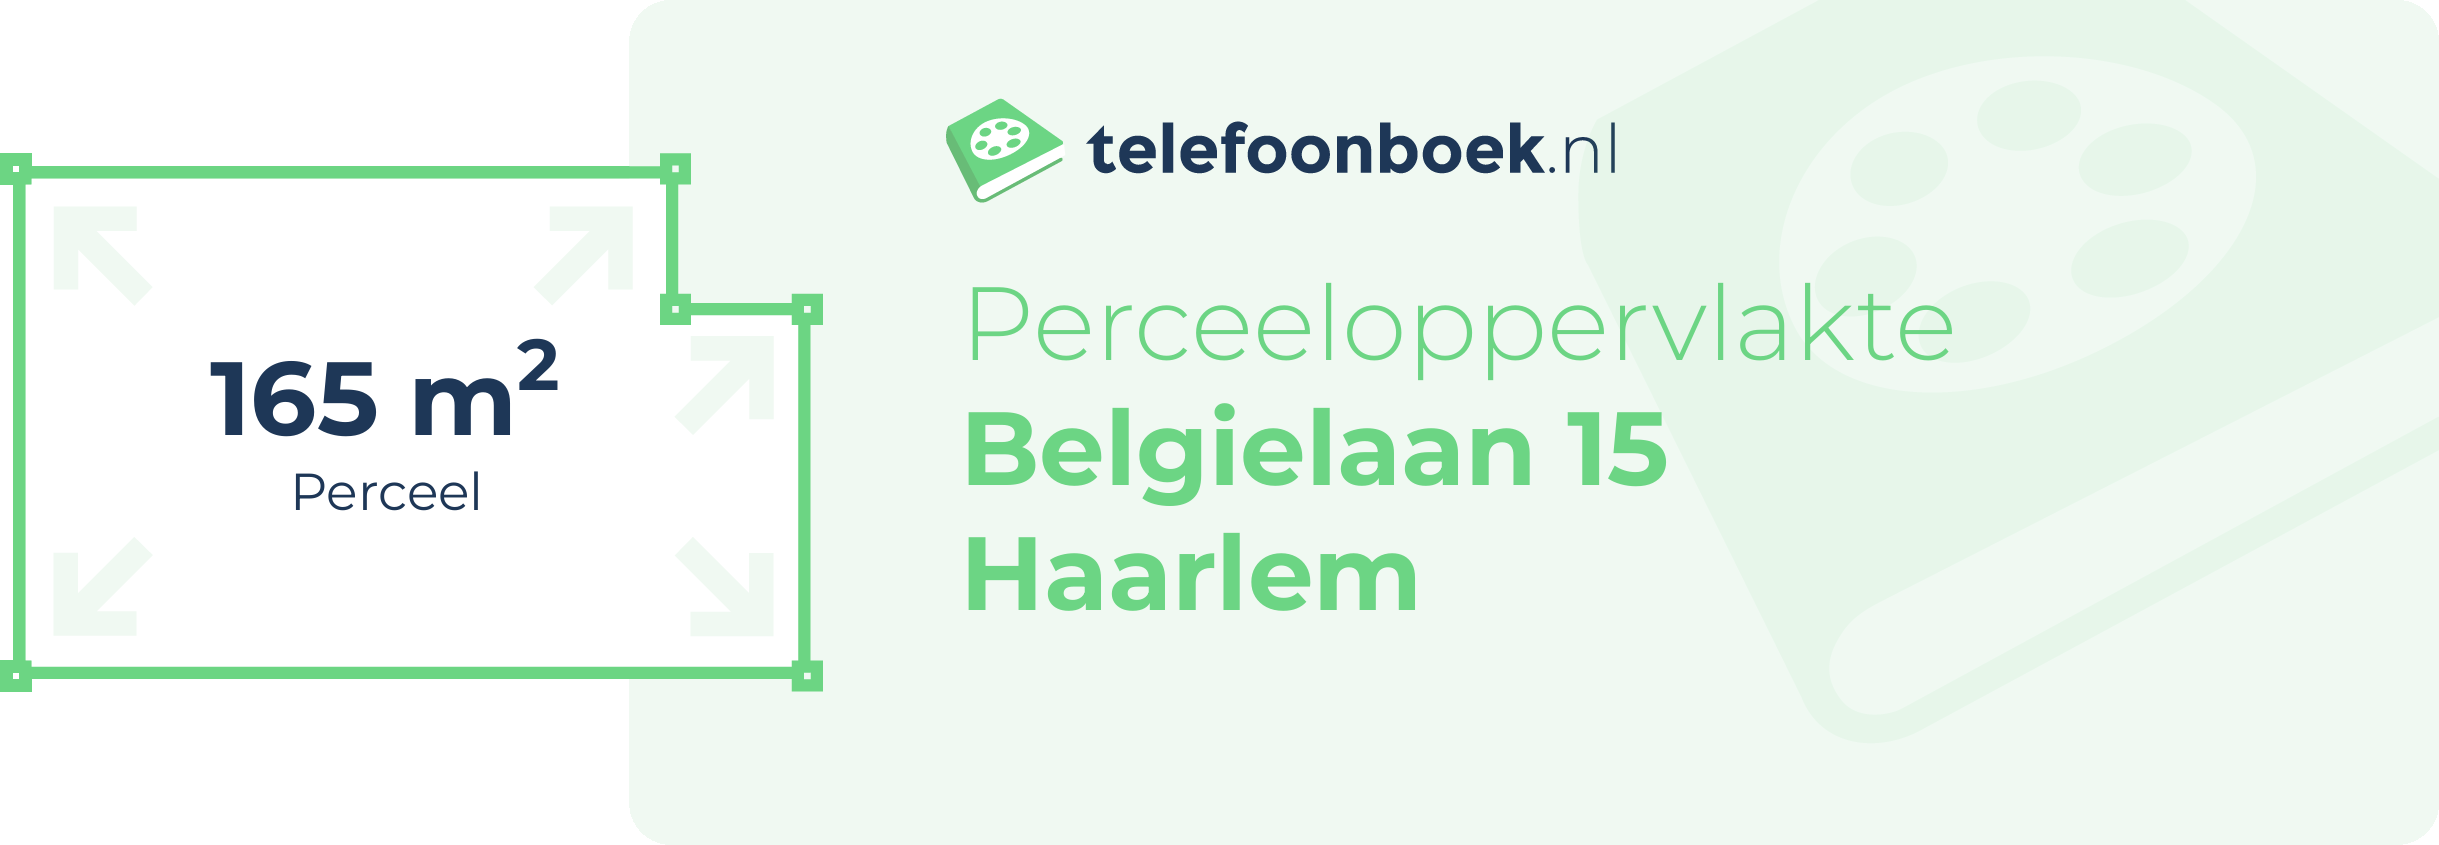 Perceeloppervlakte Belgielaan 15 Haarlem